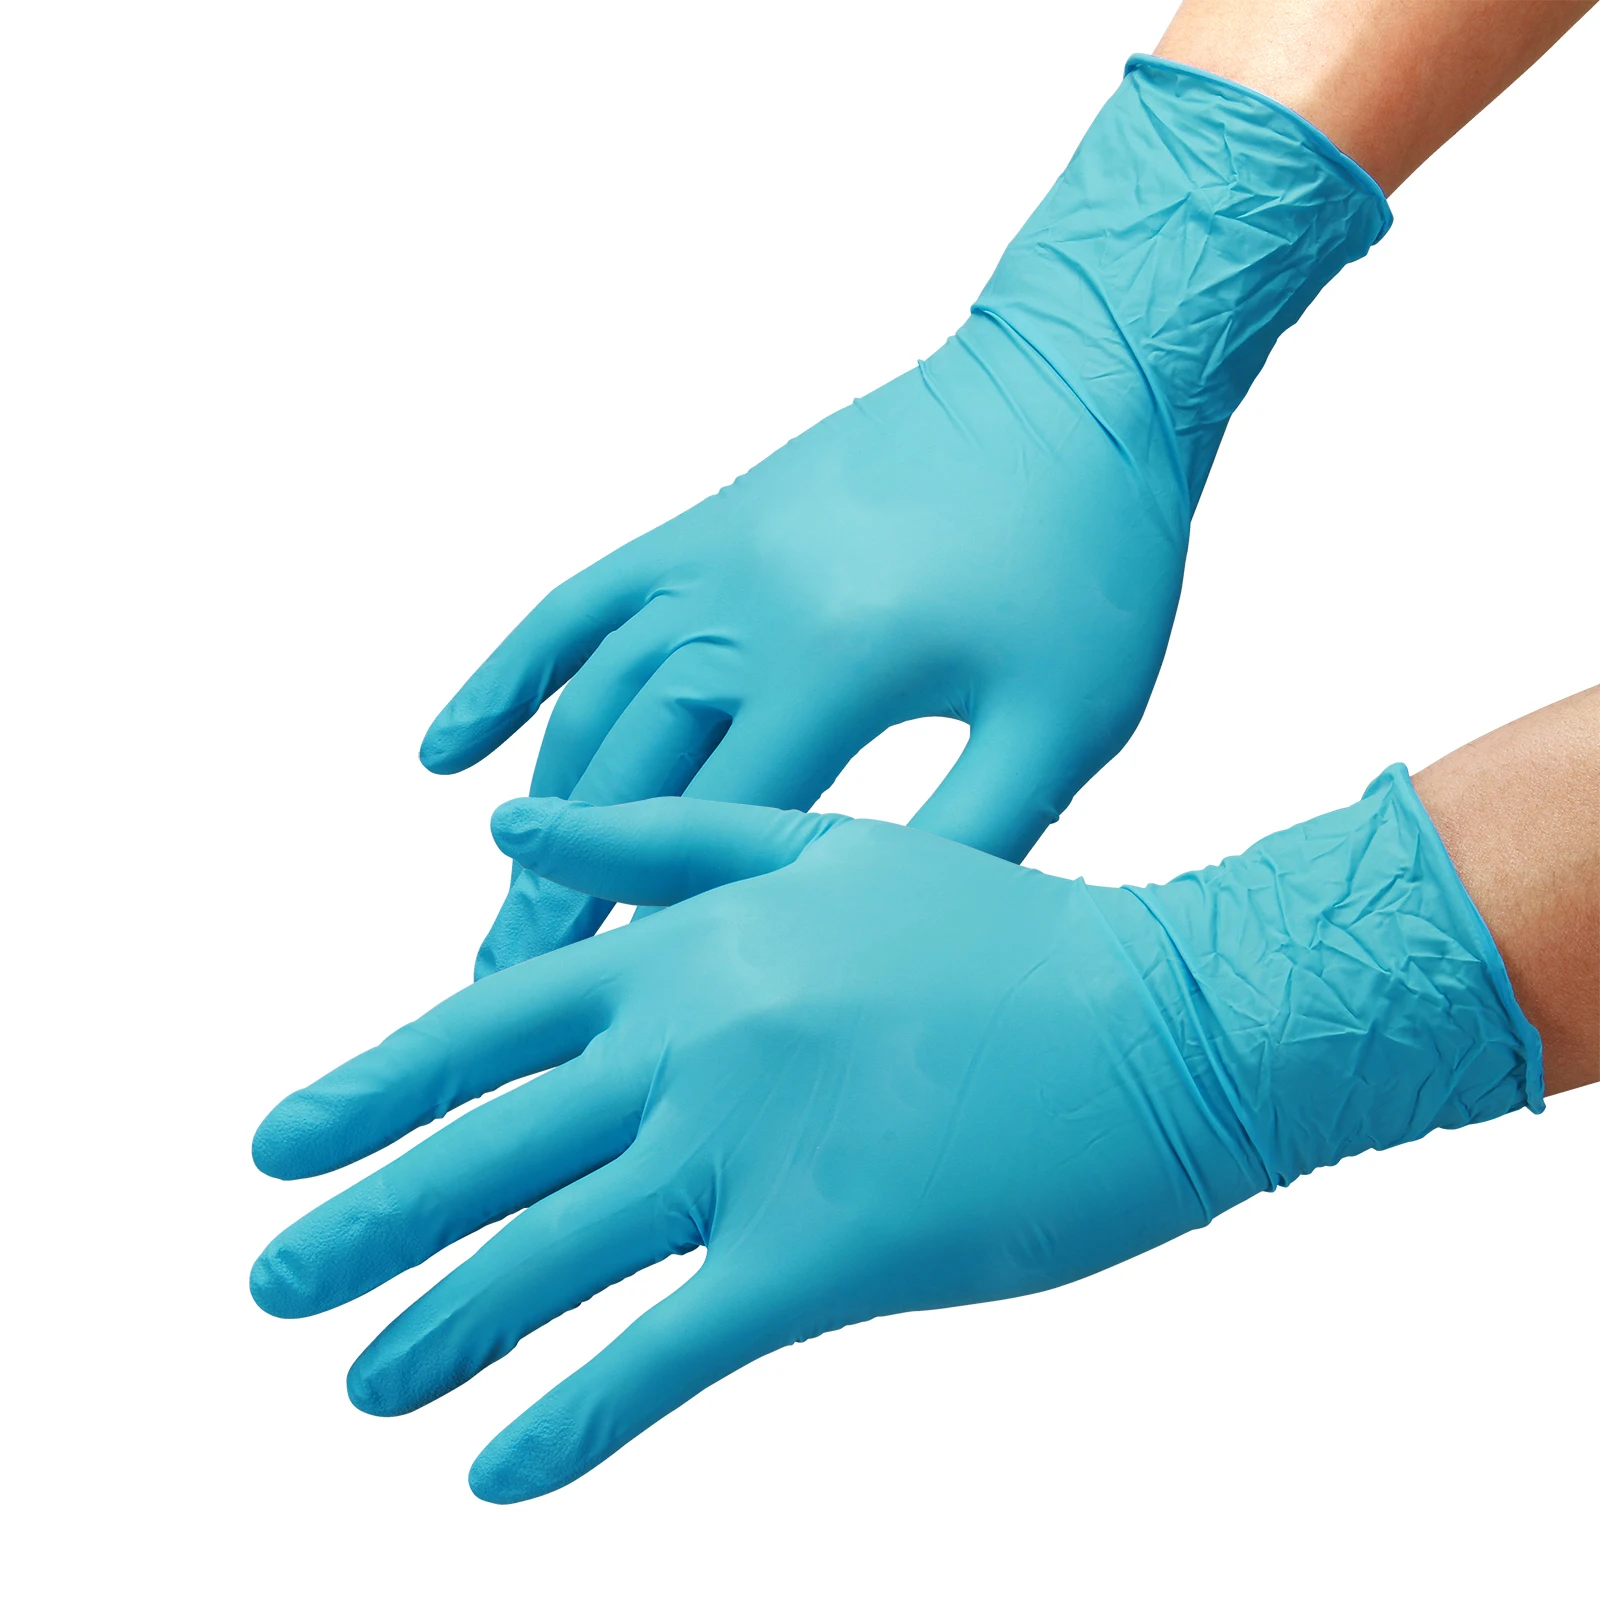 

Синие Защитные нитриловые одноразовые перчатки, Резиновые Садовые Перчатки для детской уборки